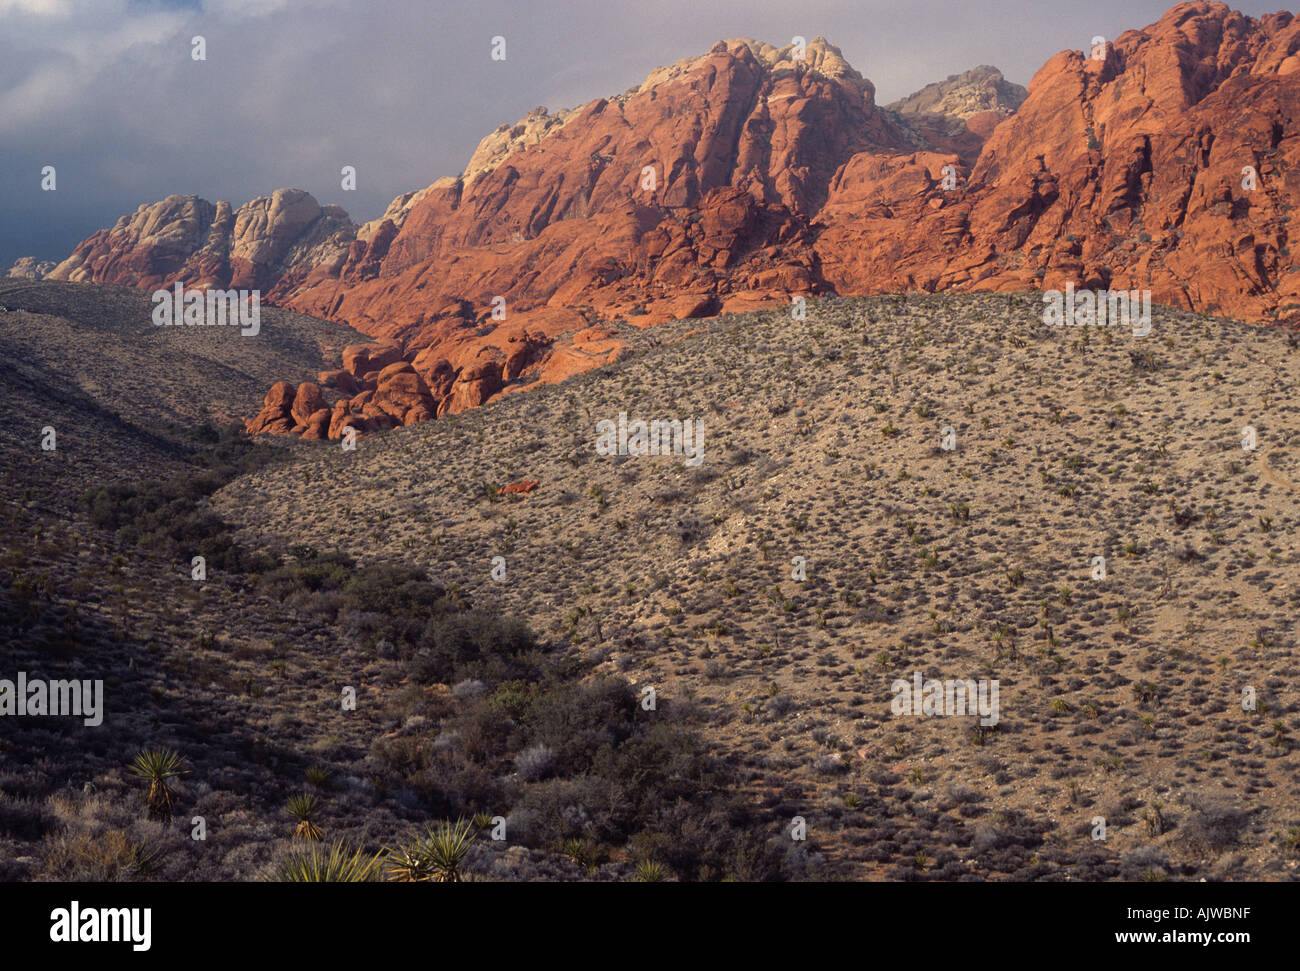 Deserto Mojave orrido con pietra arenaria rossa e grigia formazioni calcaree, il Red Rock Canyon National Conservation Area, Nevada Foto Stock